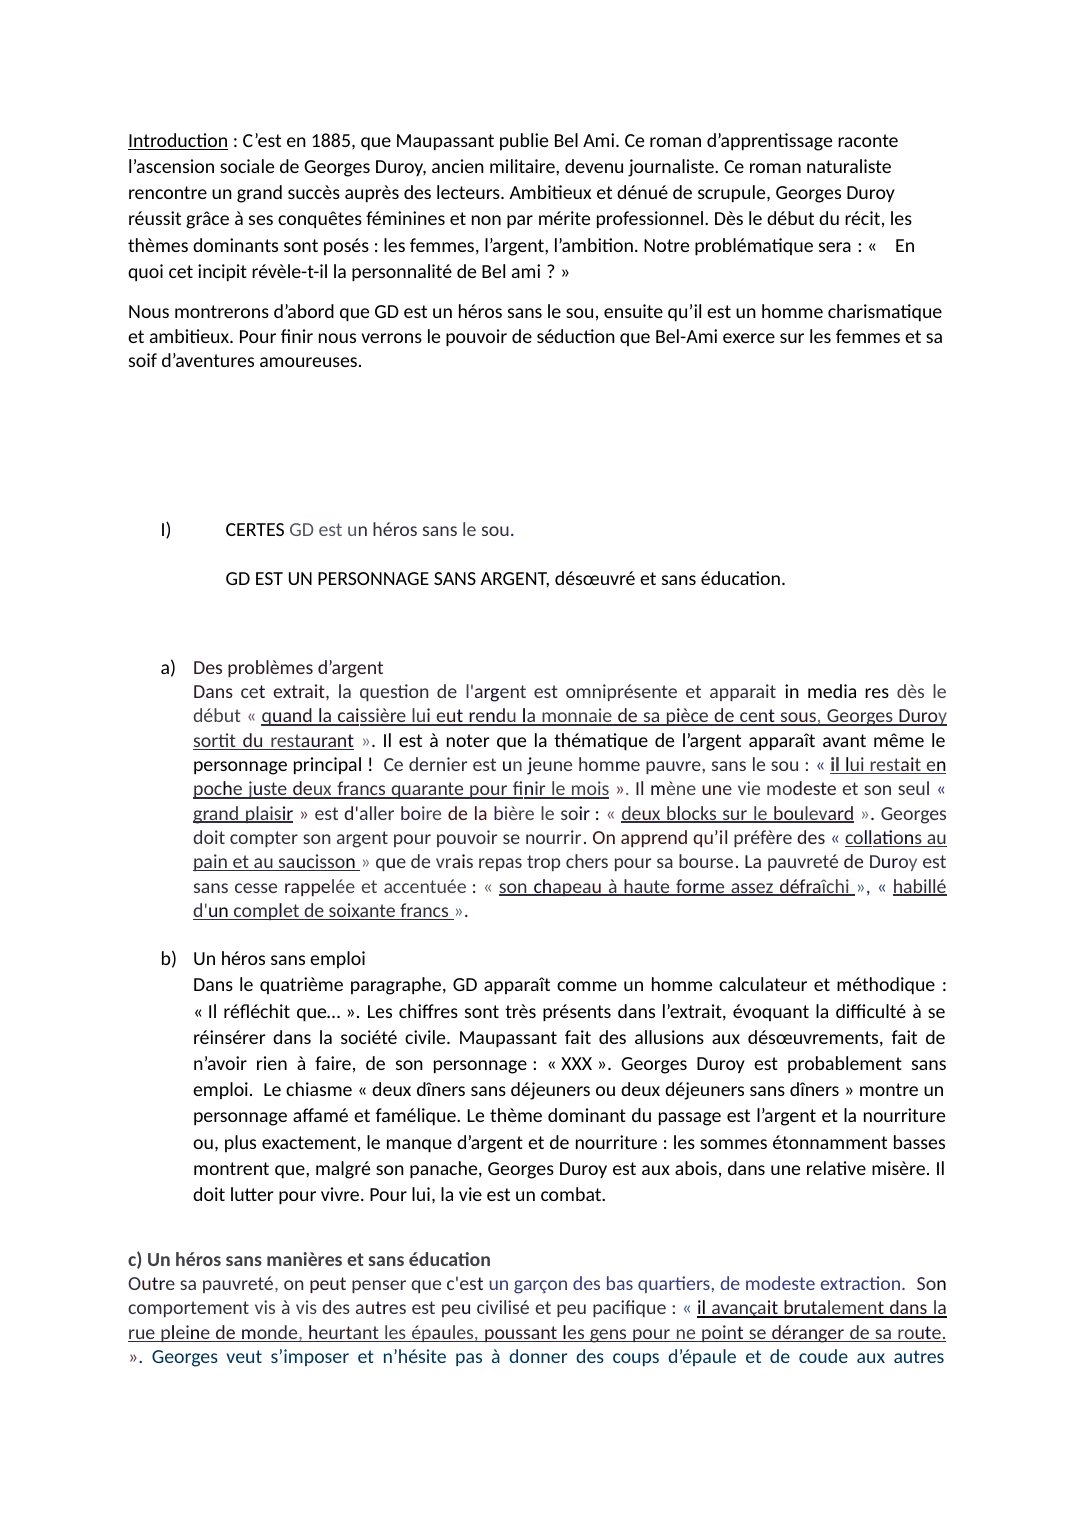 Prévisualisation du document Commentaire rédigé de l'Incipit de Bel Ami de Maupassant